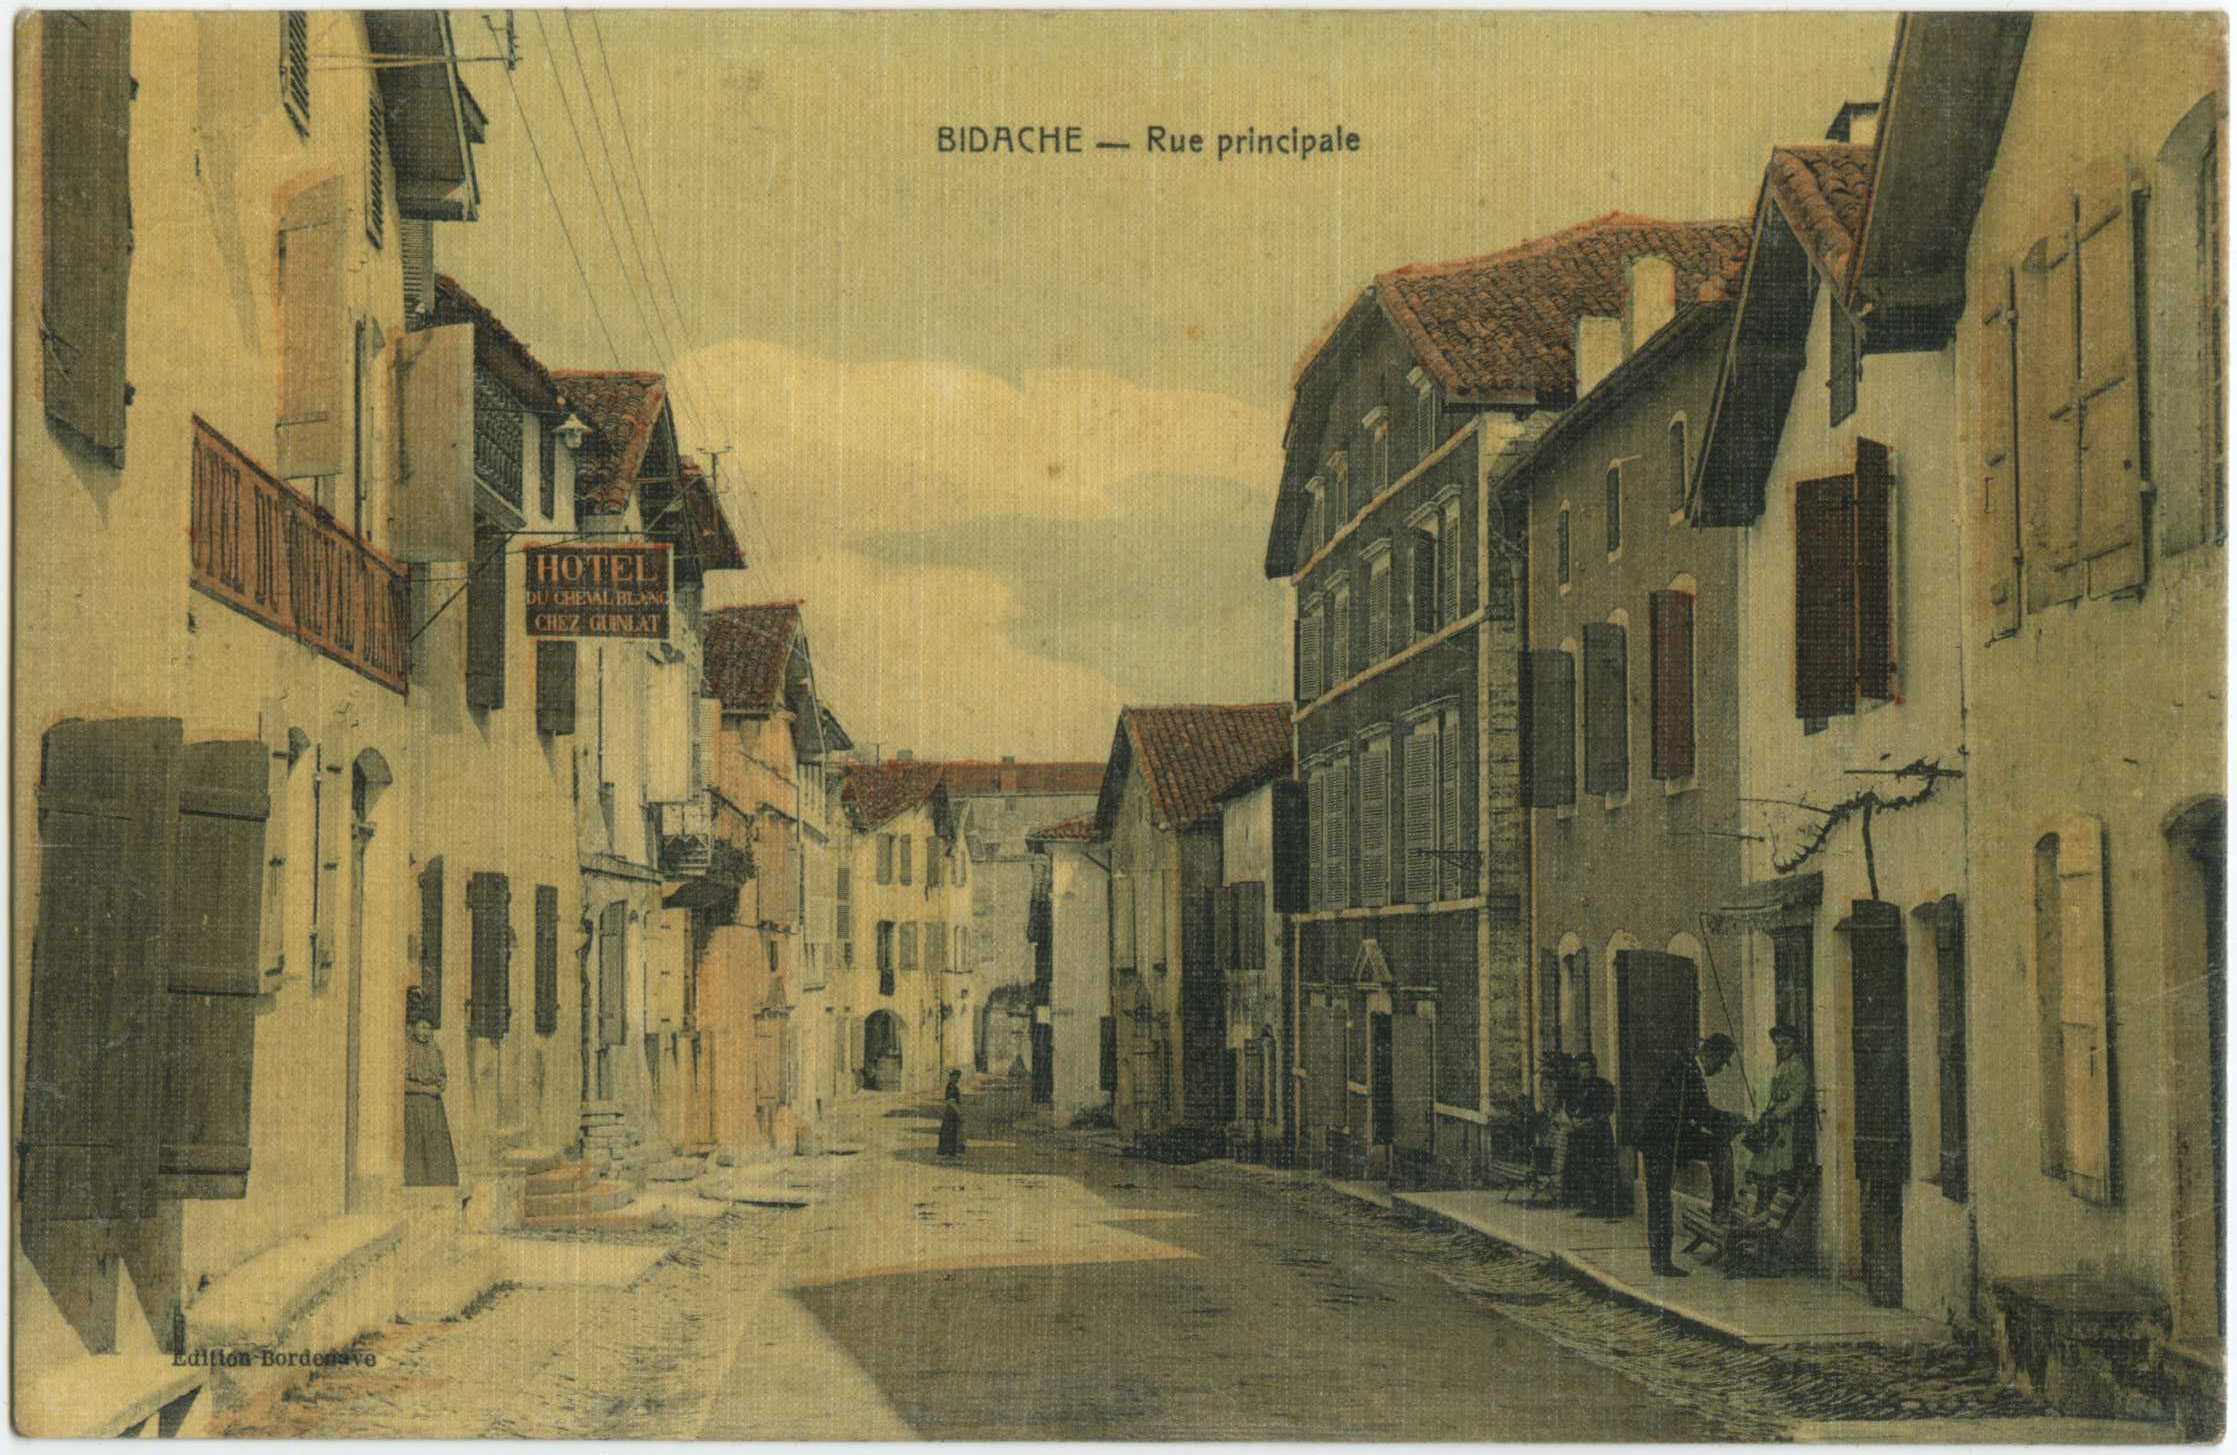 Bidache - Rue principale